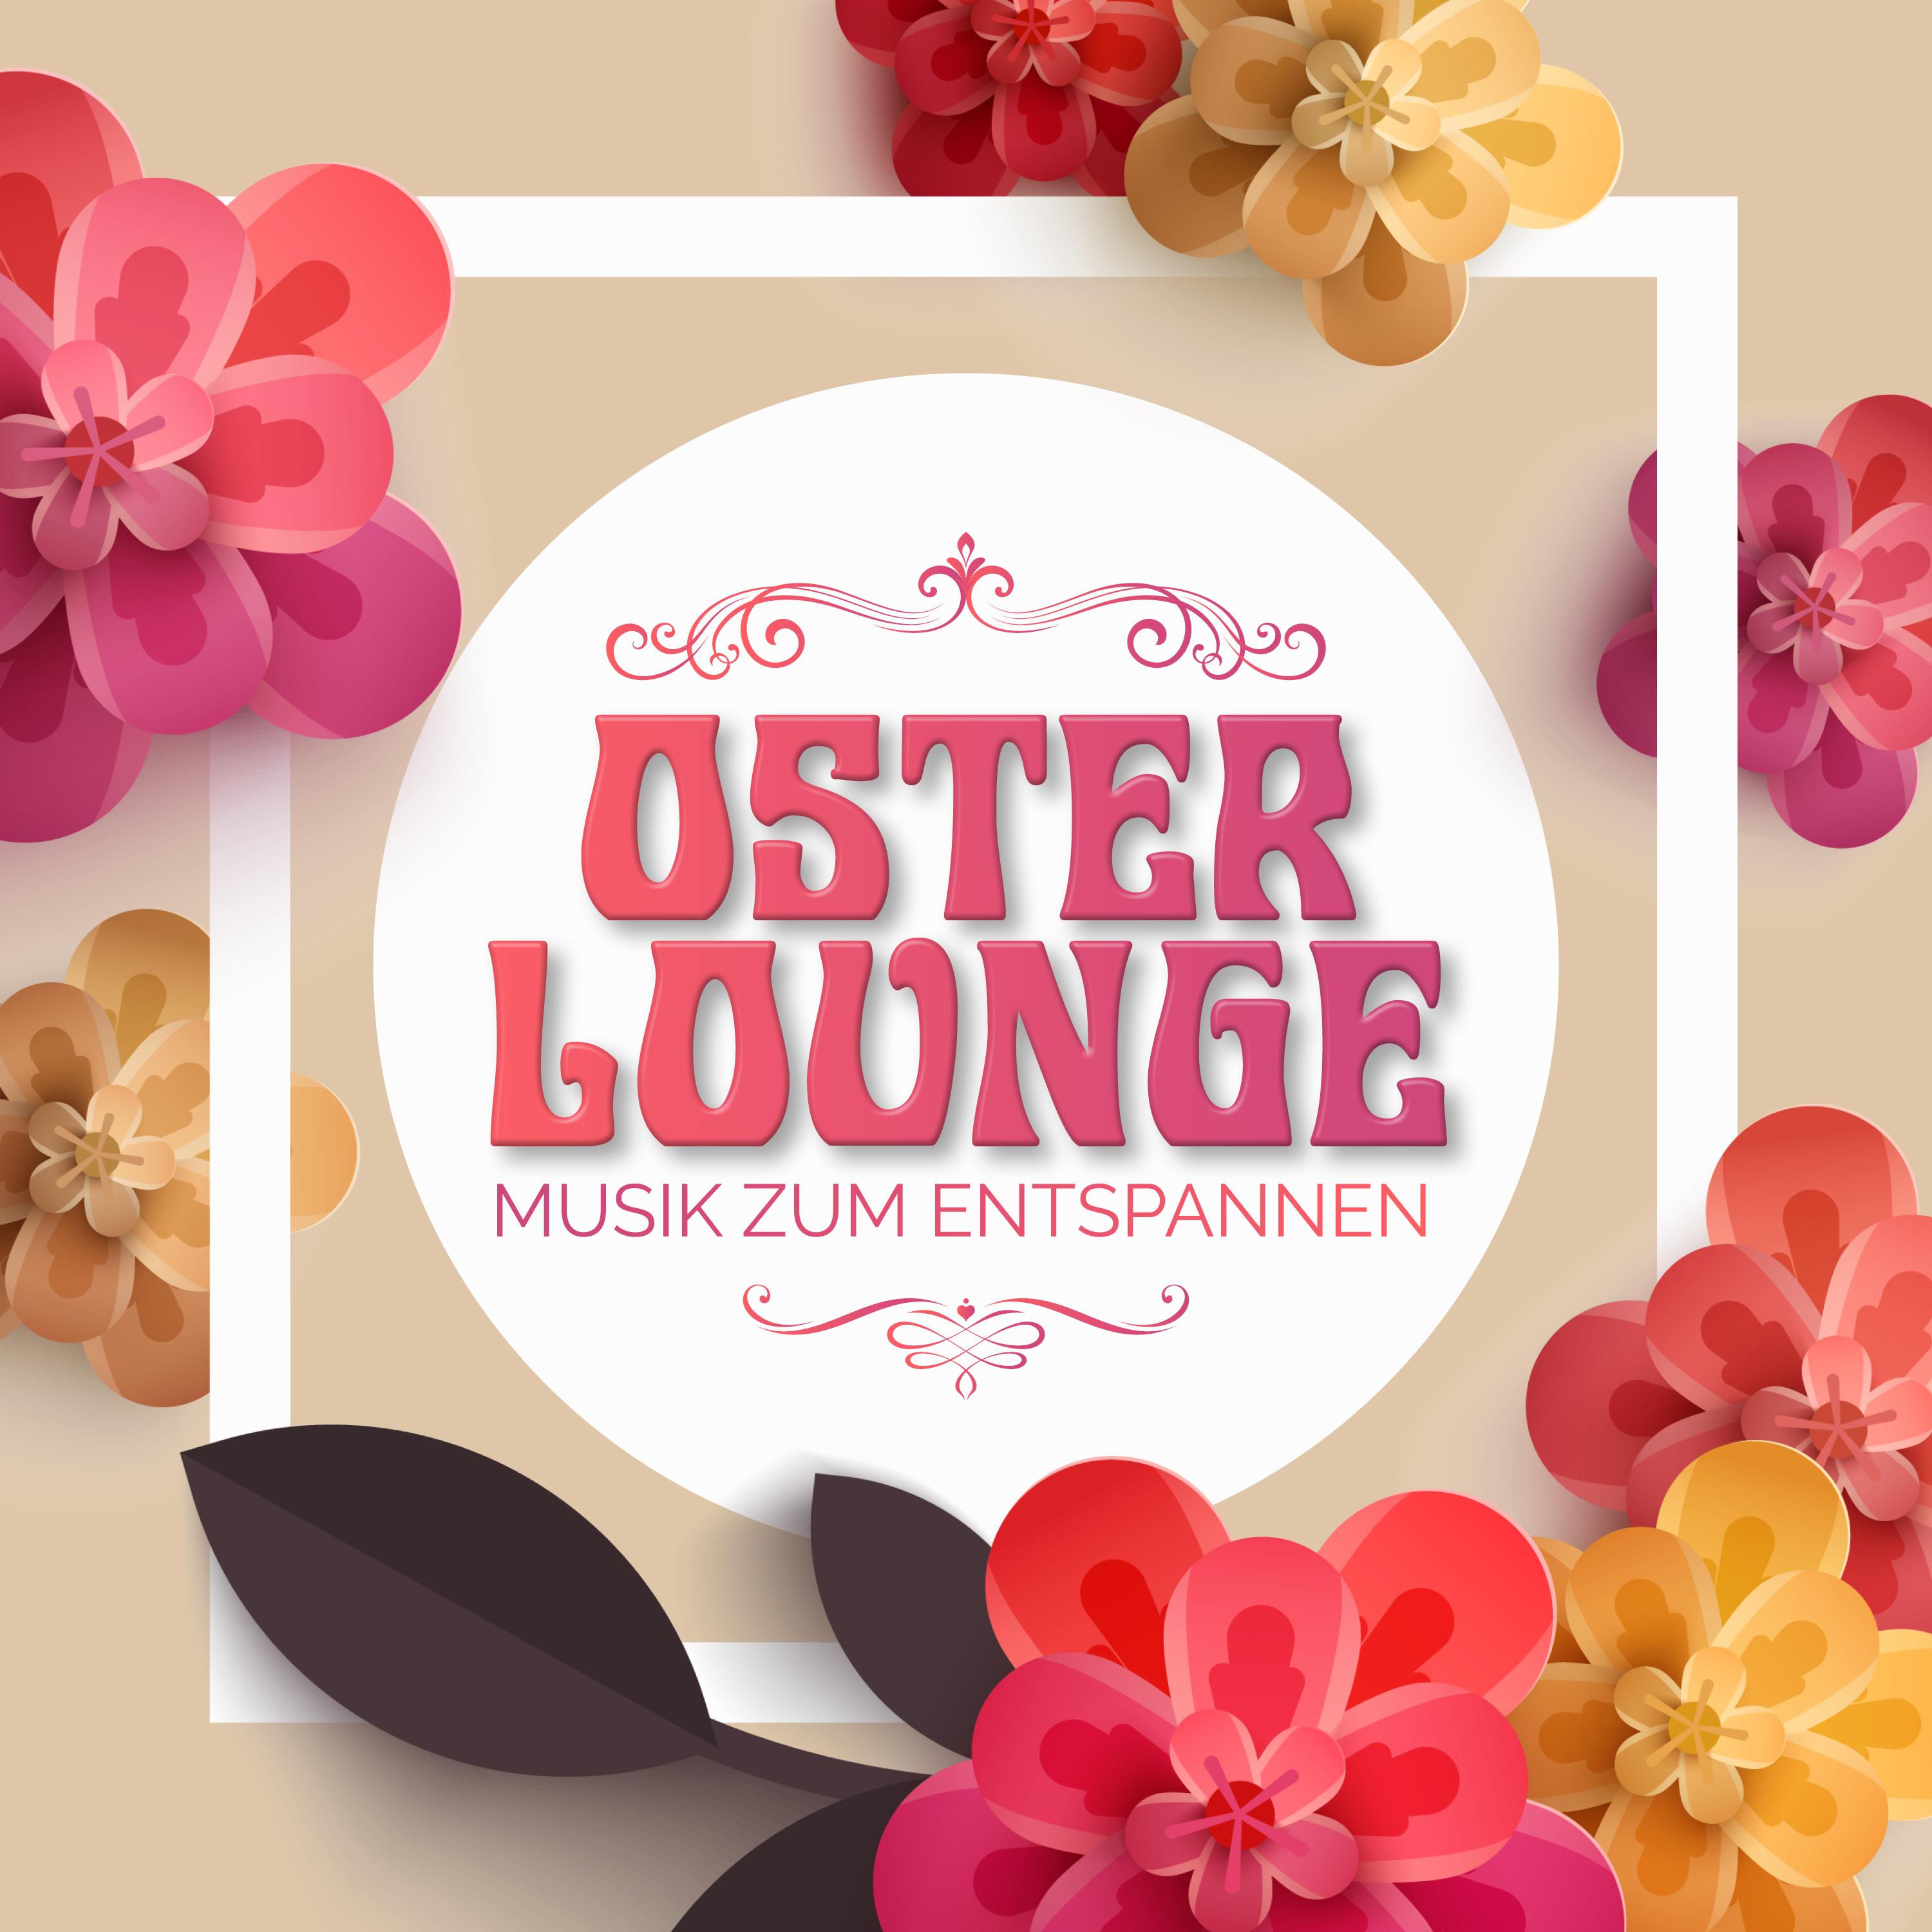 Oster Lounge - Musik zum Entspannen